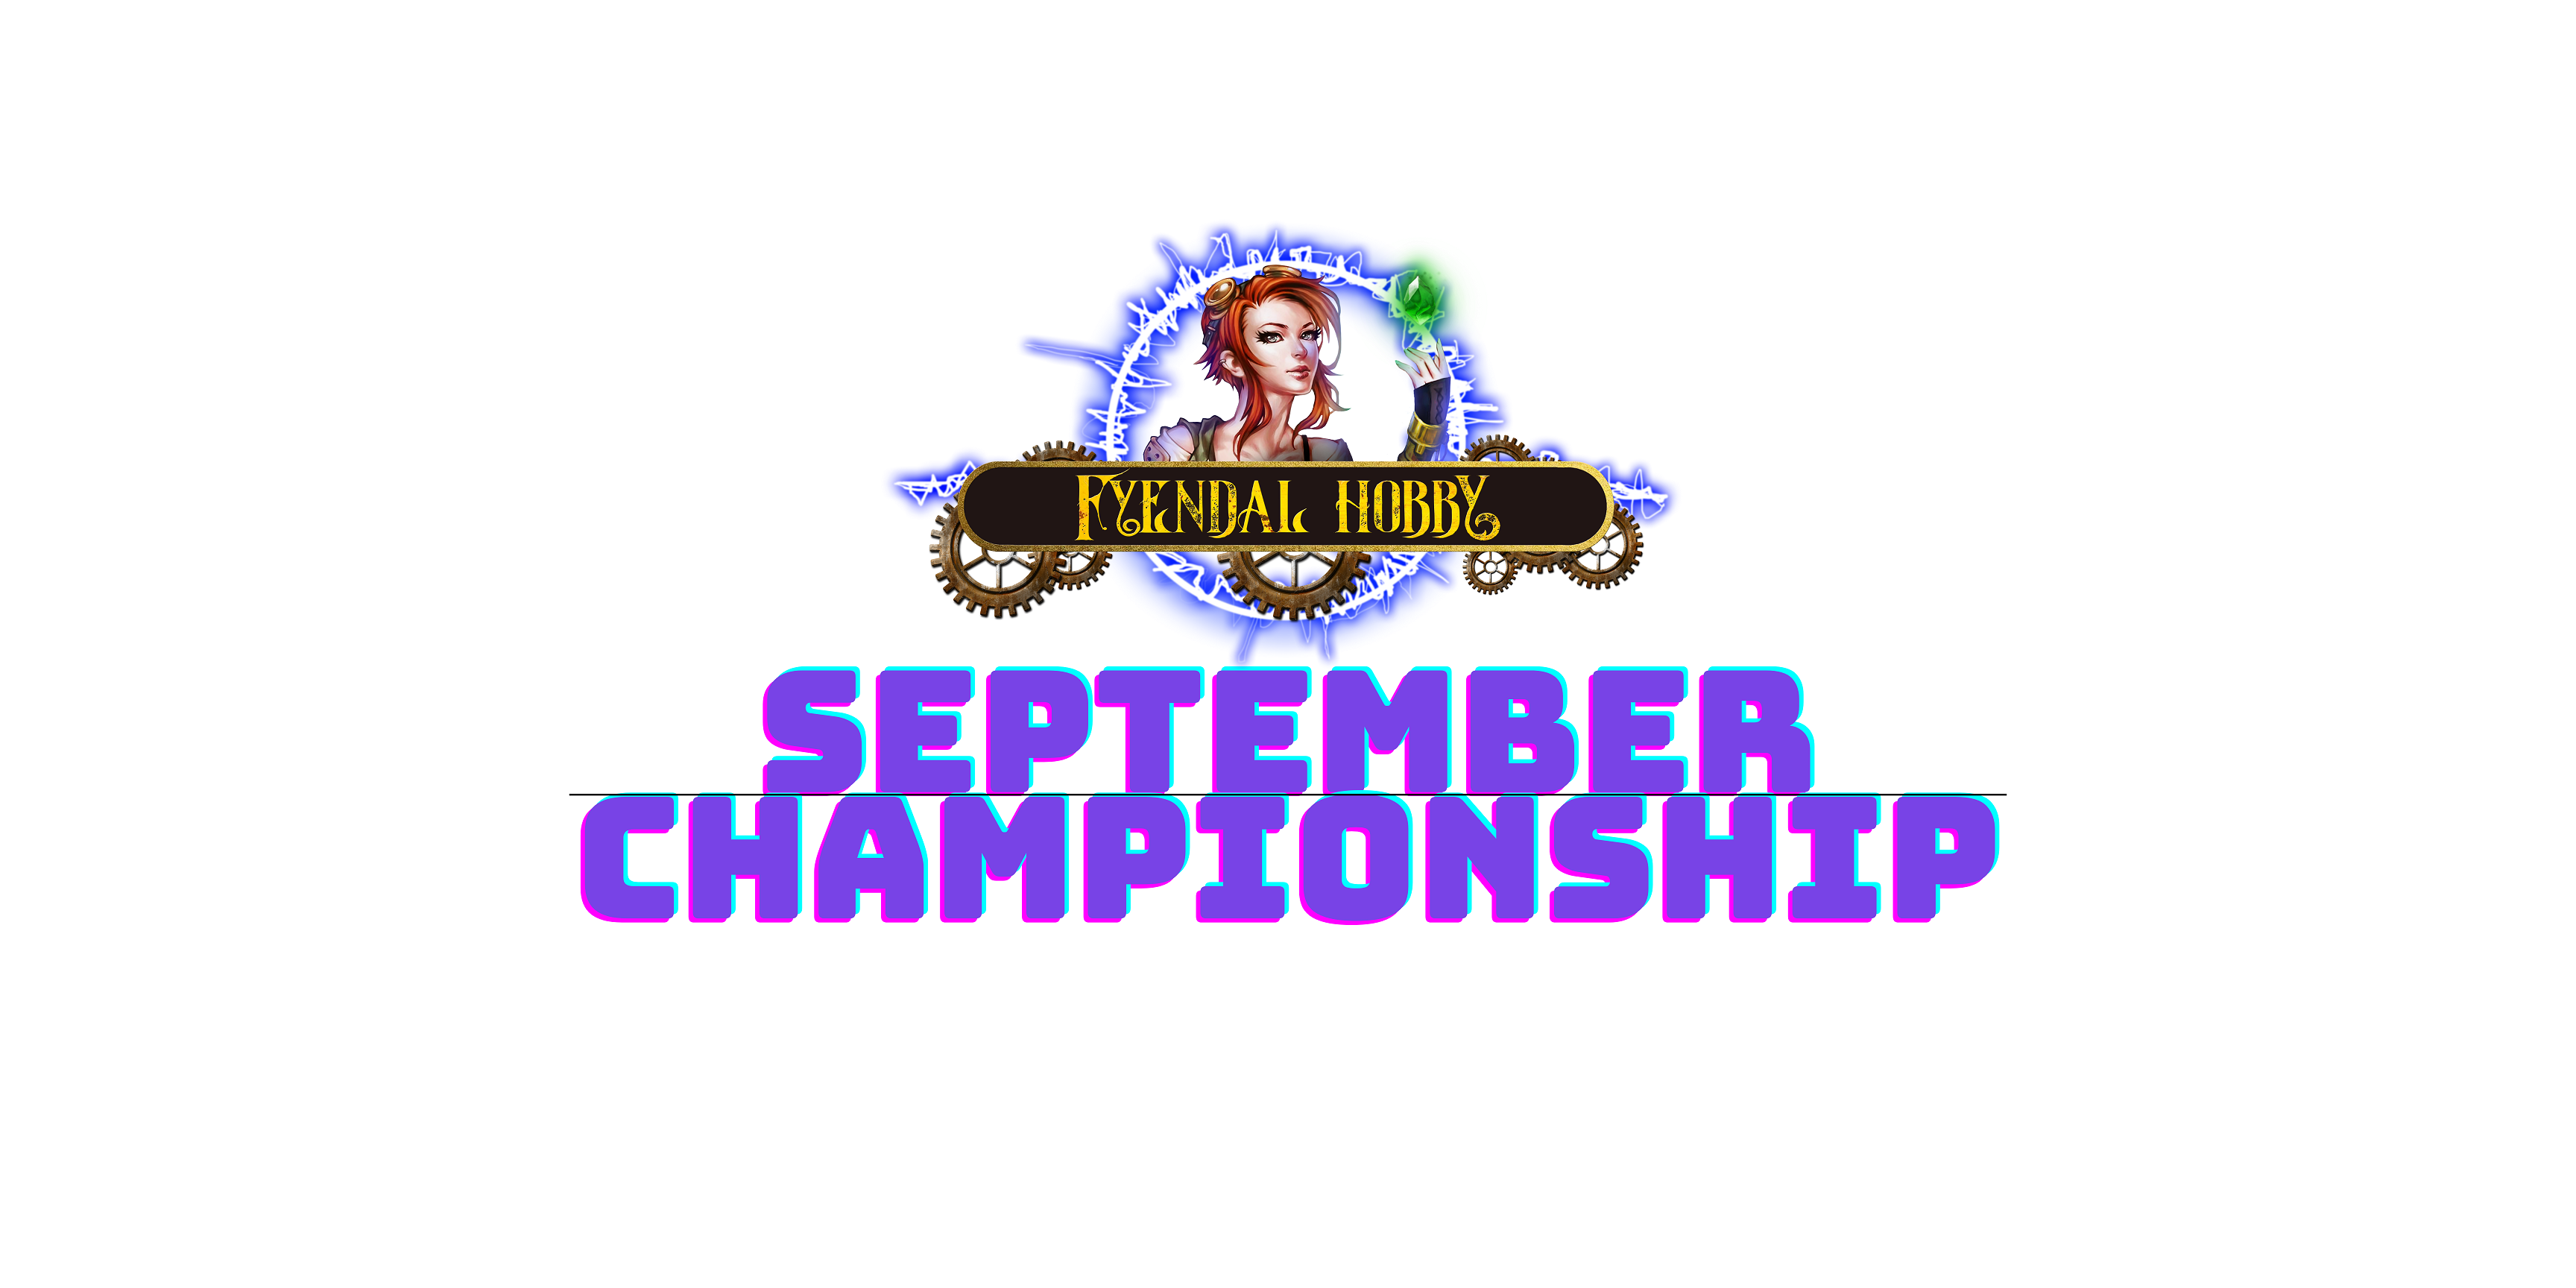 September Championship